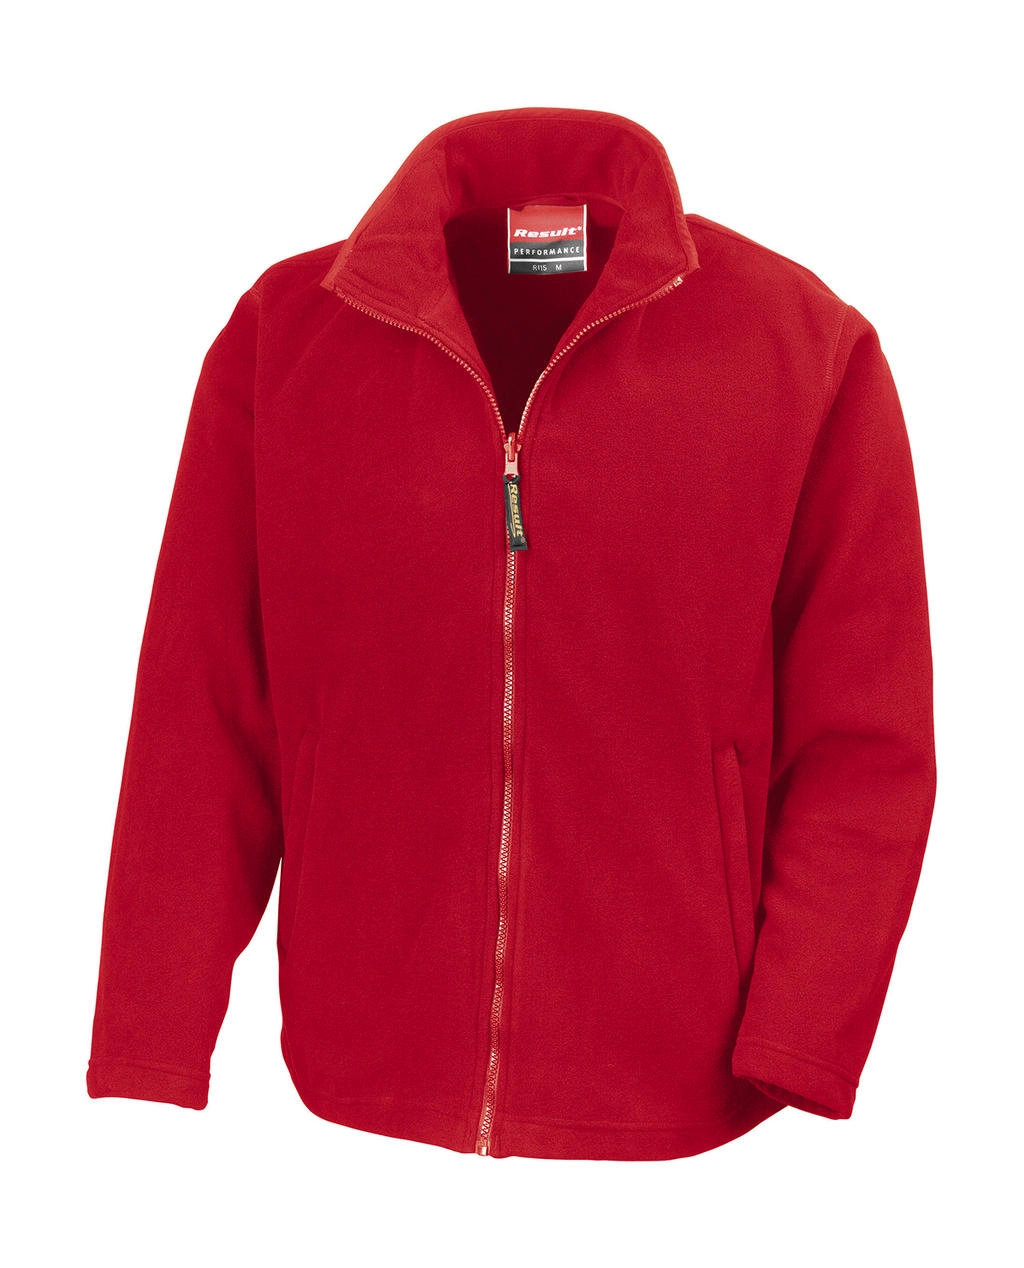 Horizon High Grade Microfleece Jacket zum Besticken und Bedrucken in der Farbe Cardinal Red mit Ihren Logo, Schriftzug oder Motiv.